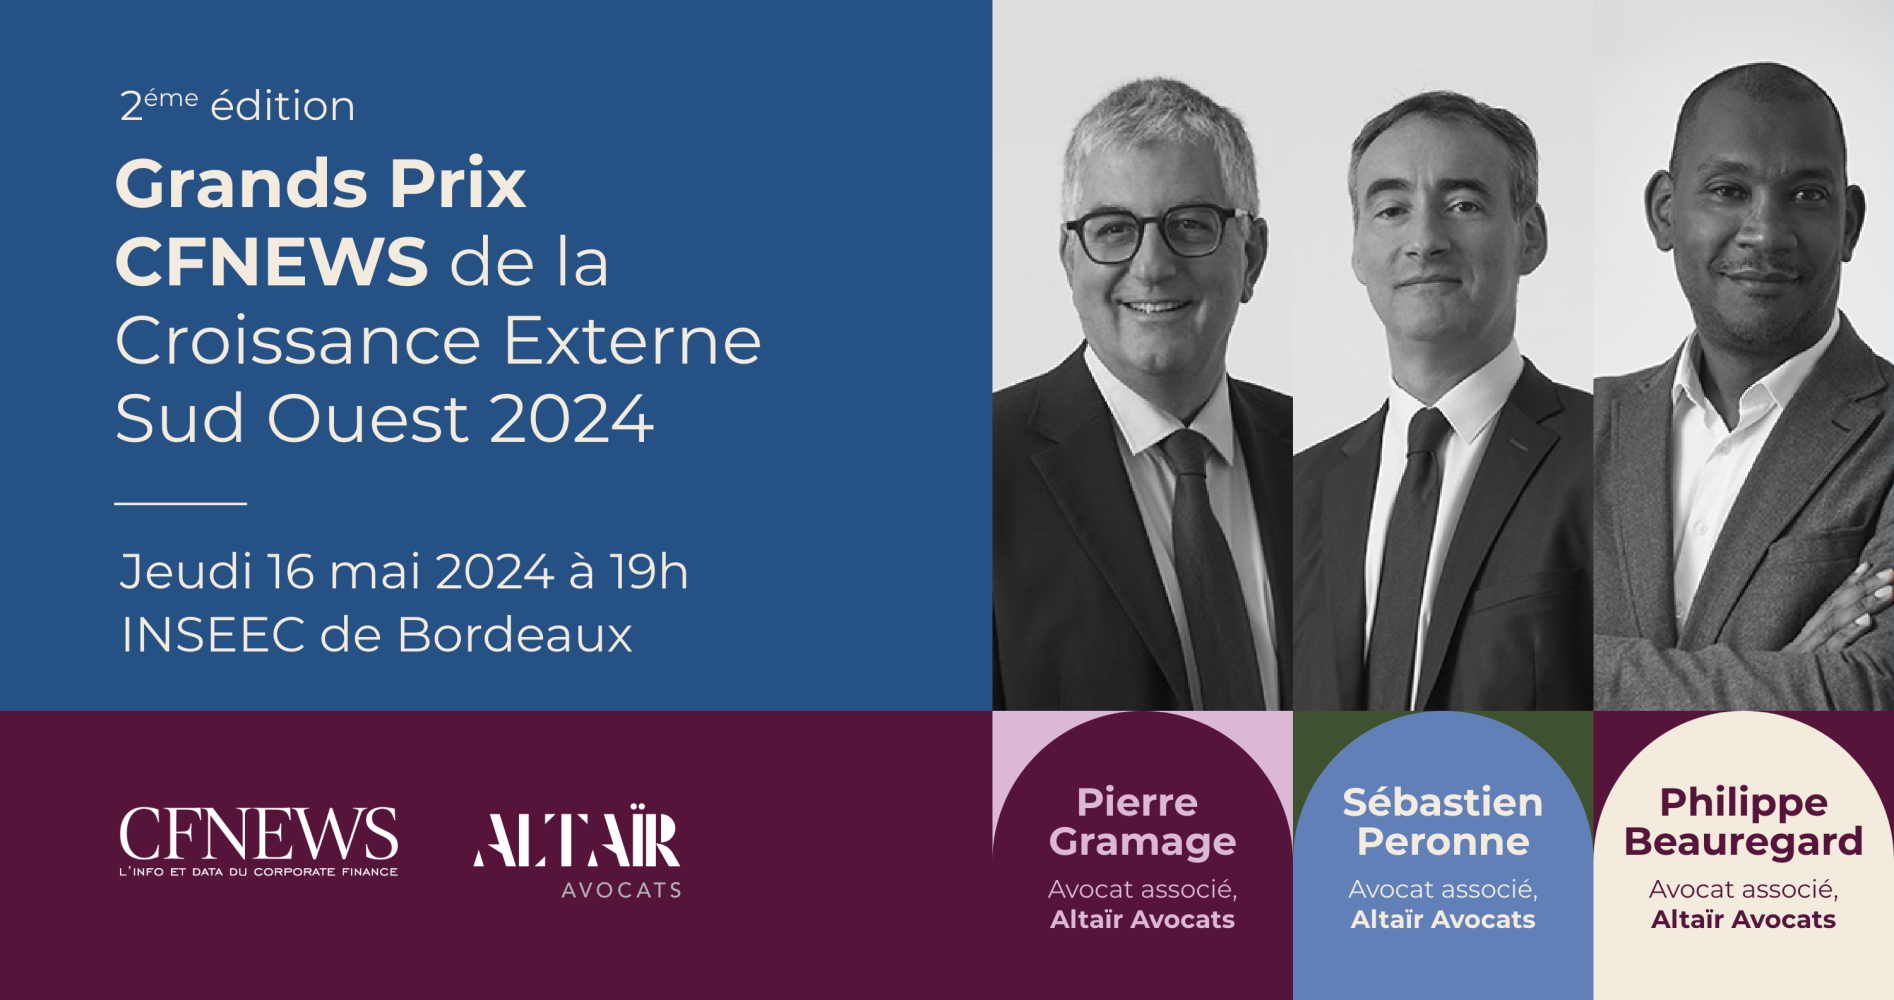 Altaïr Avocats is a partner in the 2nd edition of the CF NEWS Grands Prix de la Croissance Externe Sud-Ouest.